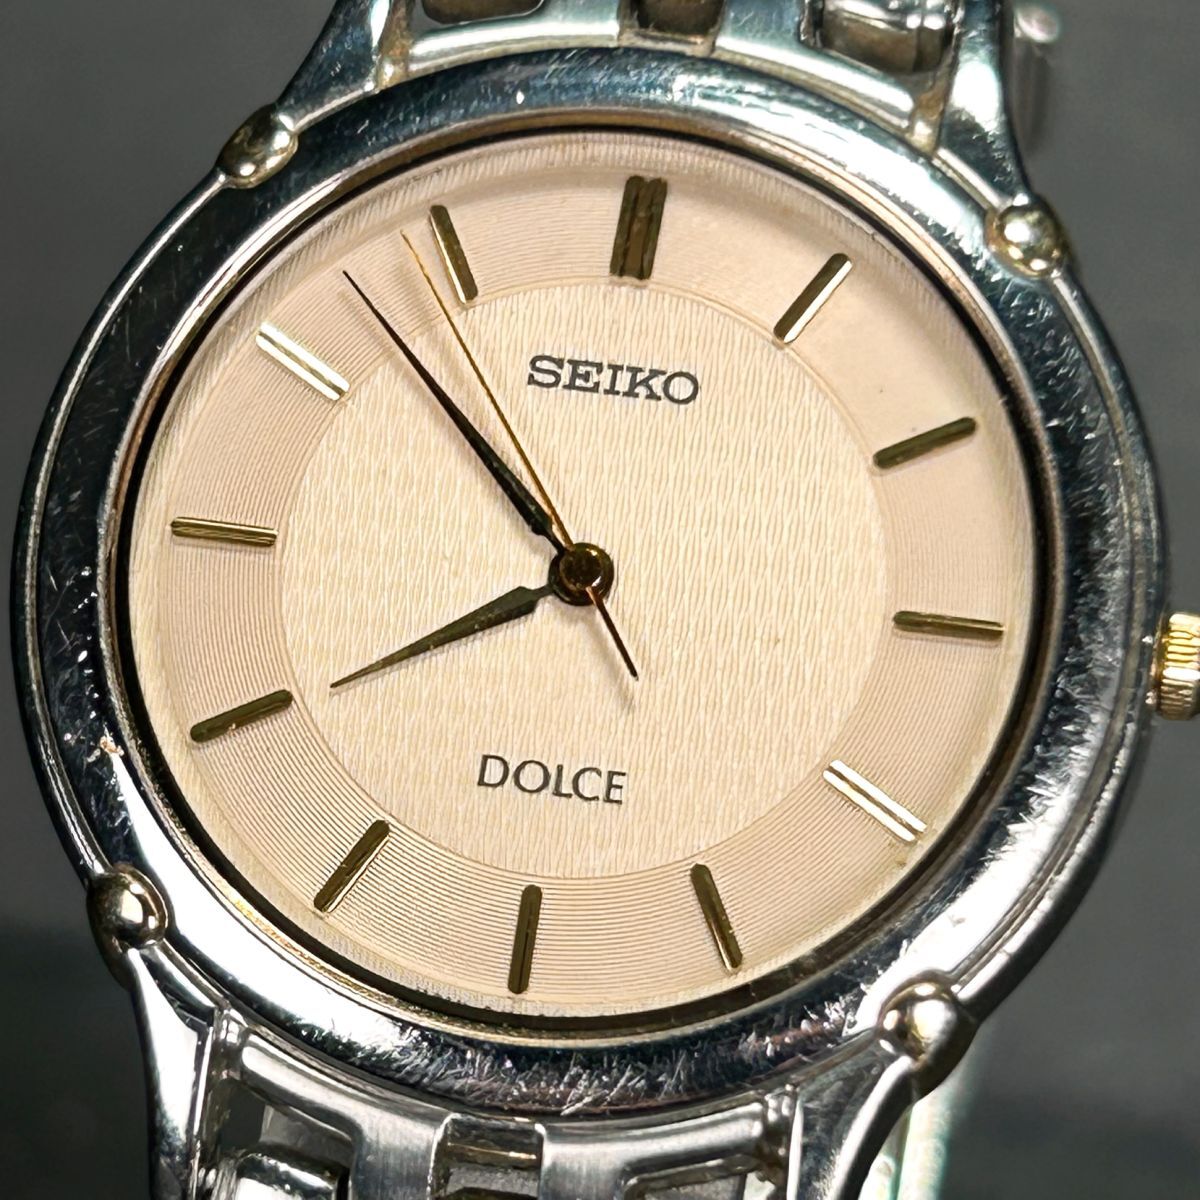 SEIKO セイコー DOLCE ドルチェ 8J41-6080 腕時計 クオーツ アナログ 3針 アイボリー文字盤 ステンレススチール メンズ 新品電池交換済み_画像2